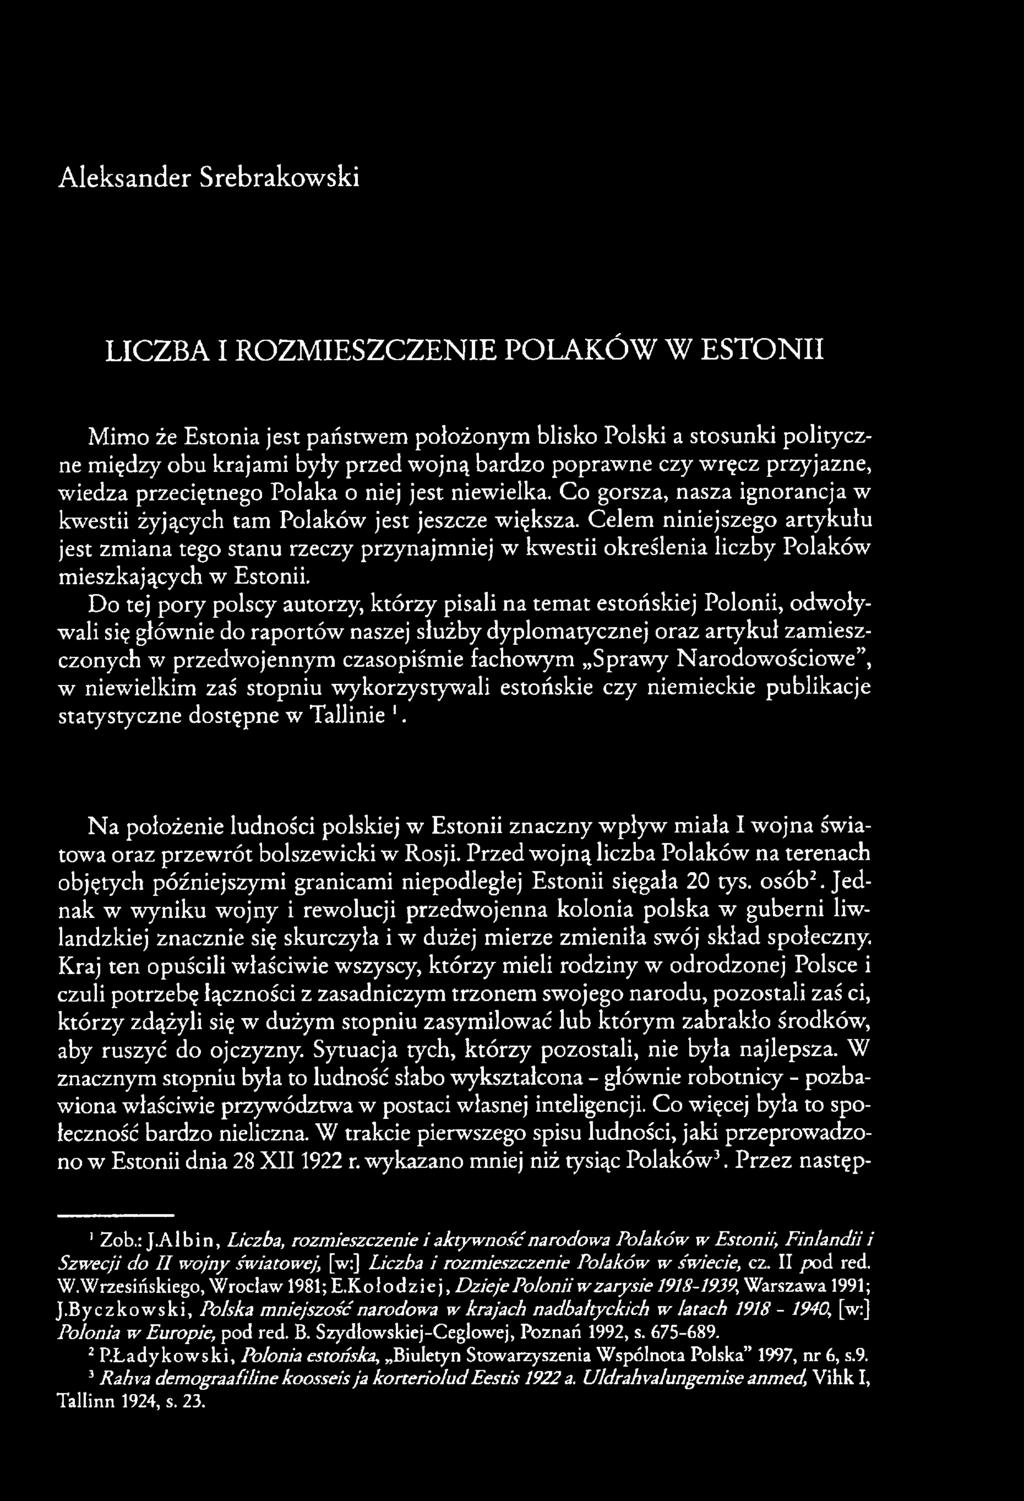 Celem niniejszego artykułu jest zmiana tego stanu rzeczy przynajmniej w kwestii określenia liczby Polaków mieszkających w Estonii.